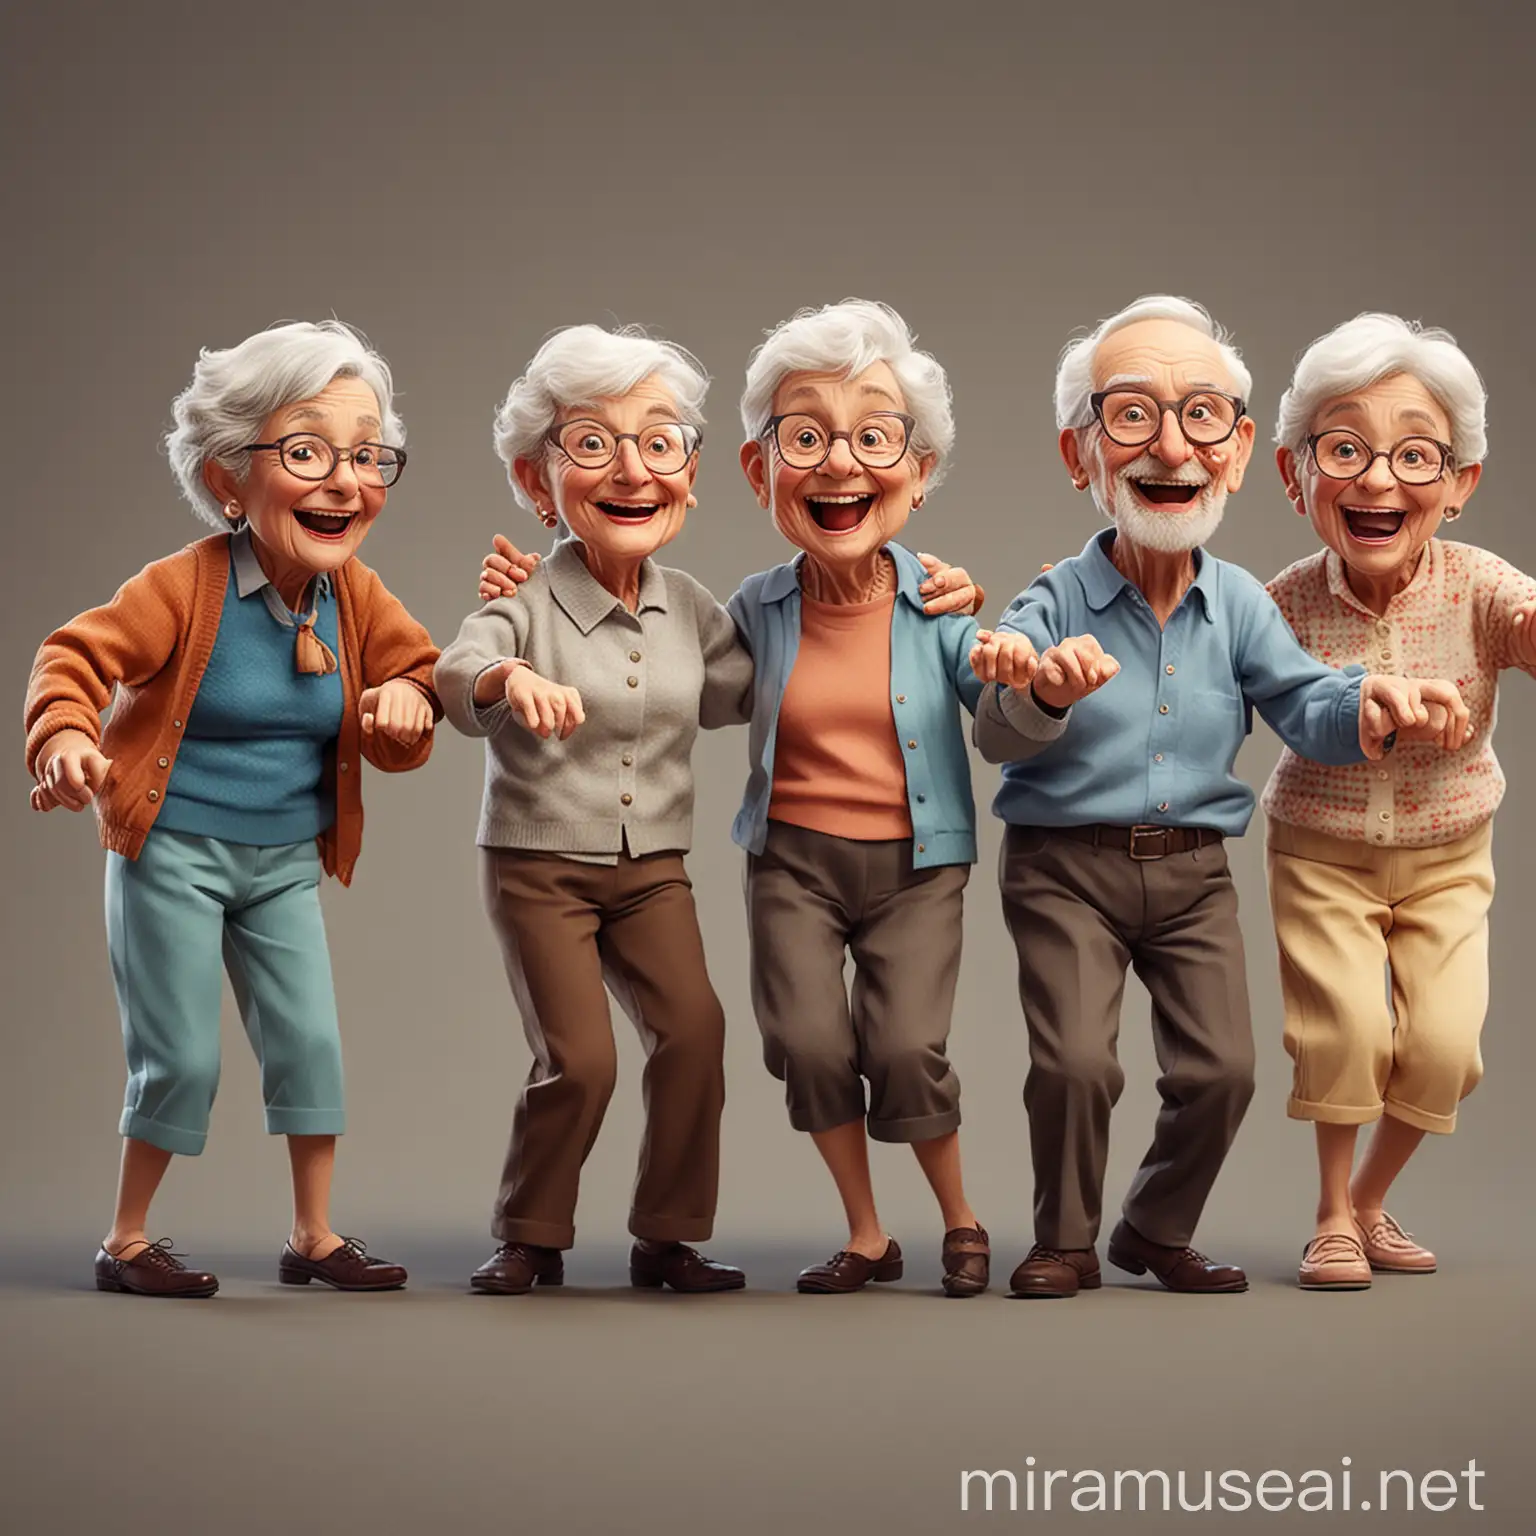 Elderly Dance Group Enjoying Energetic Movements